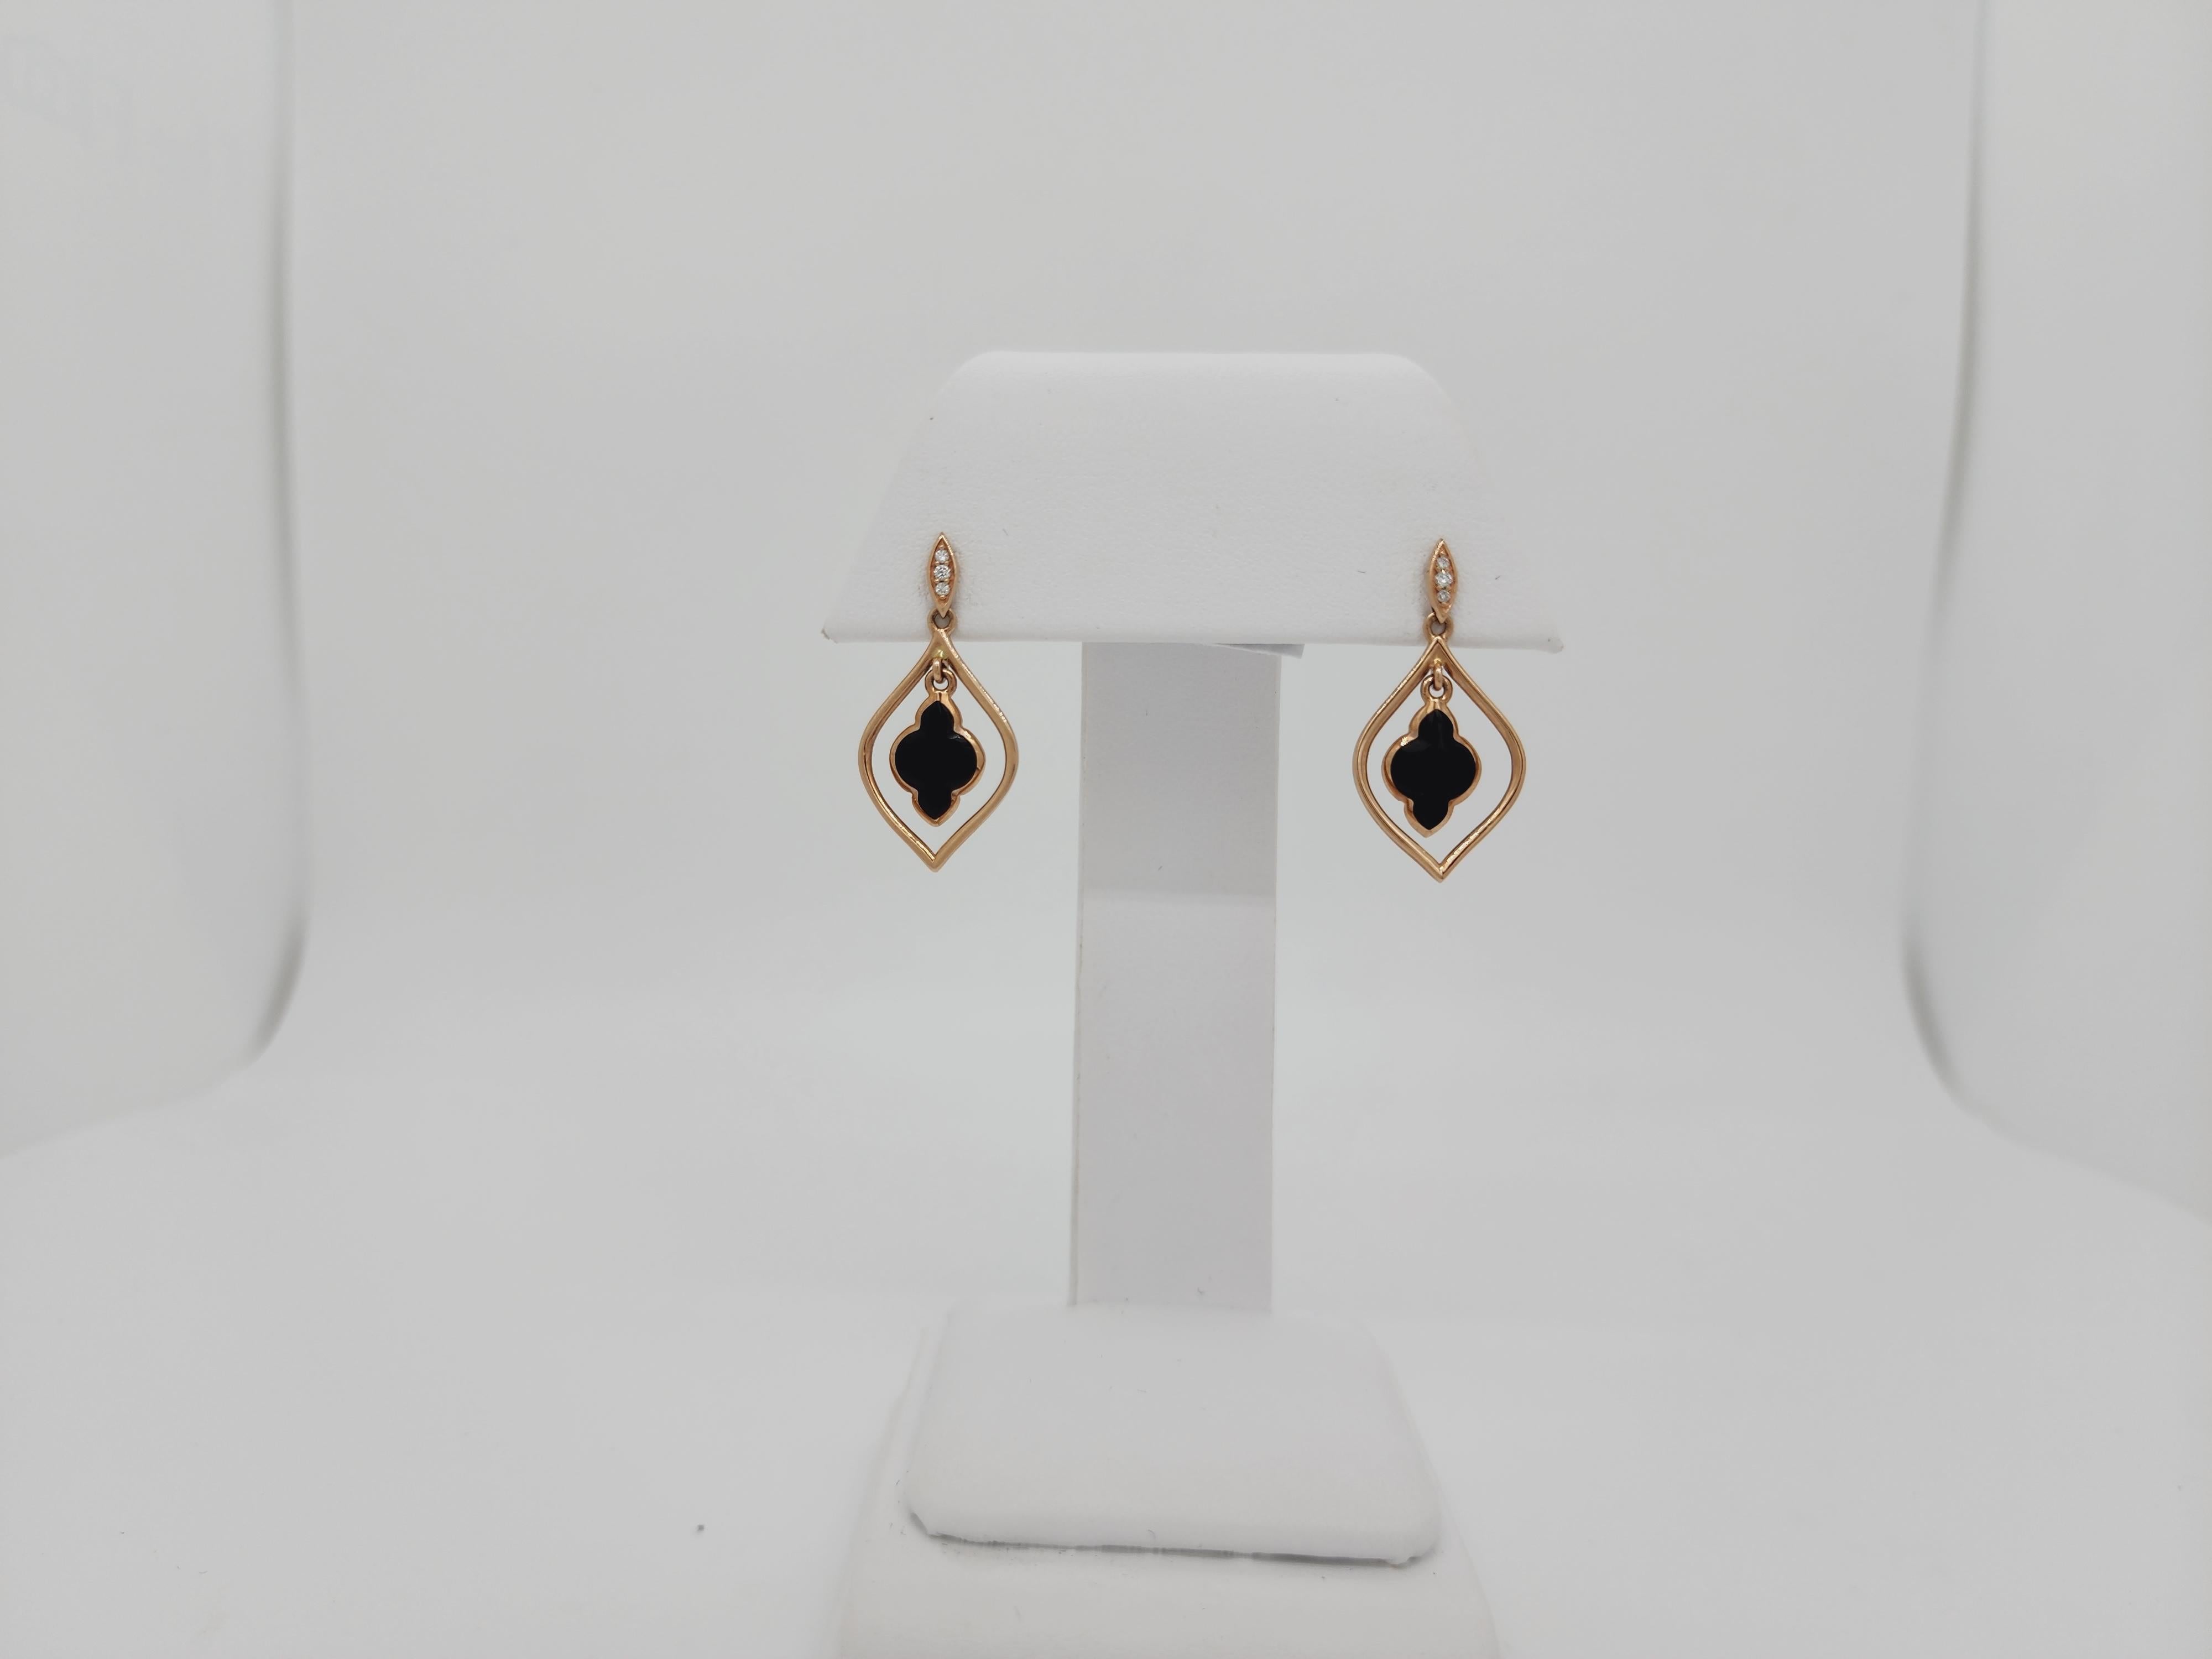 Wunderschöne Kabana Ohrringe mit Onyx Steinen in freier Form und 0,04 ct. weißen Diamanten.  Handgefertigt in 14k Gelbgold.  Hergestellt in den USA.